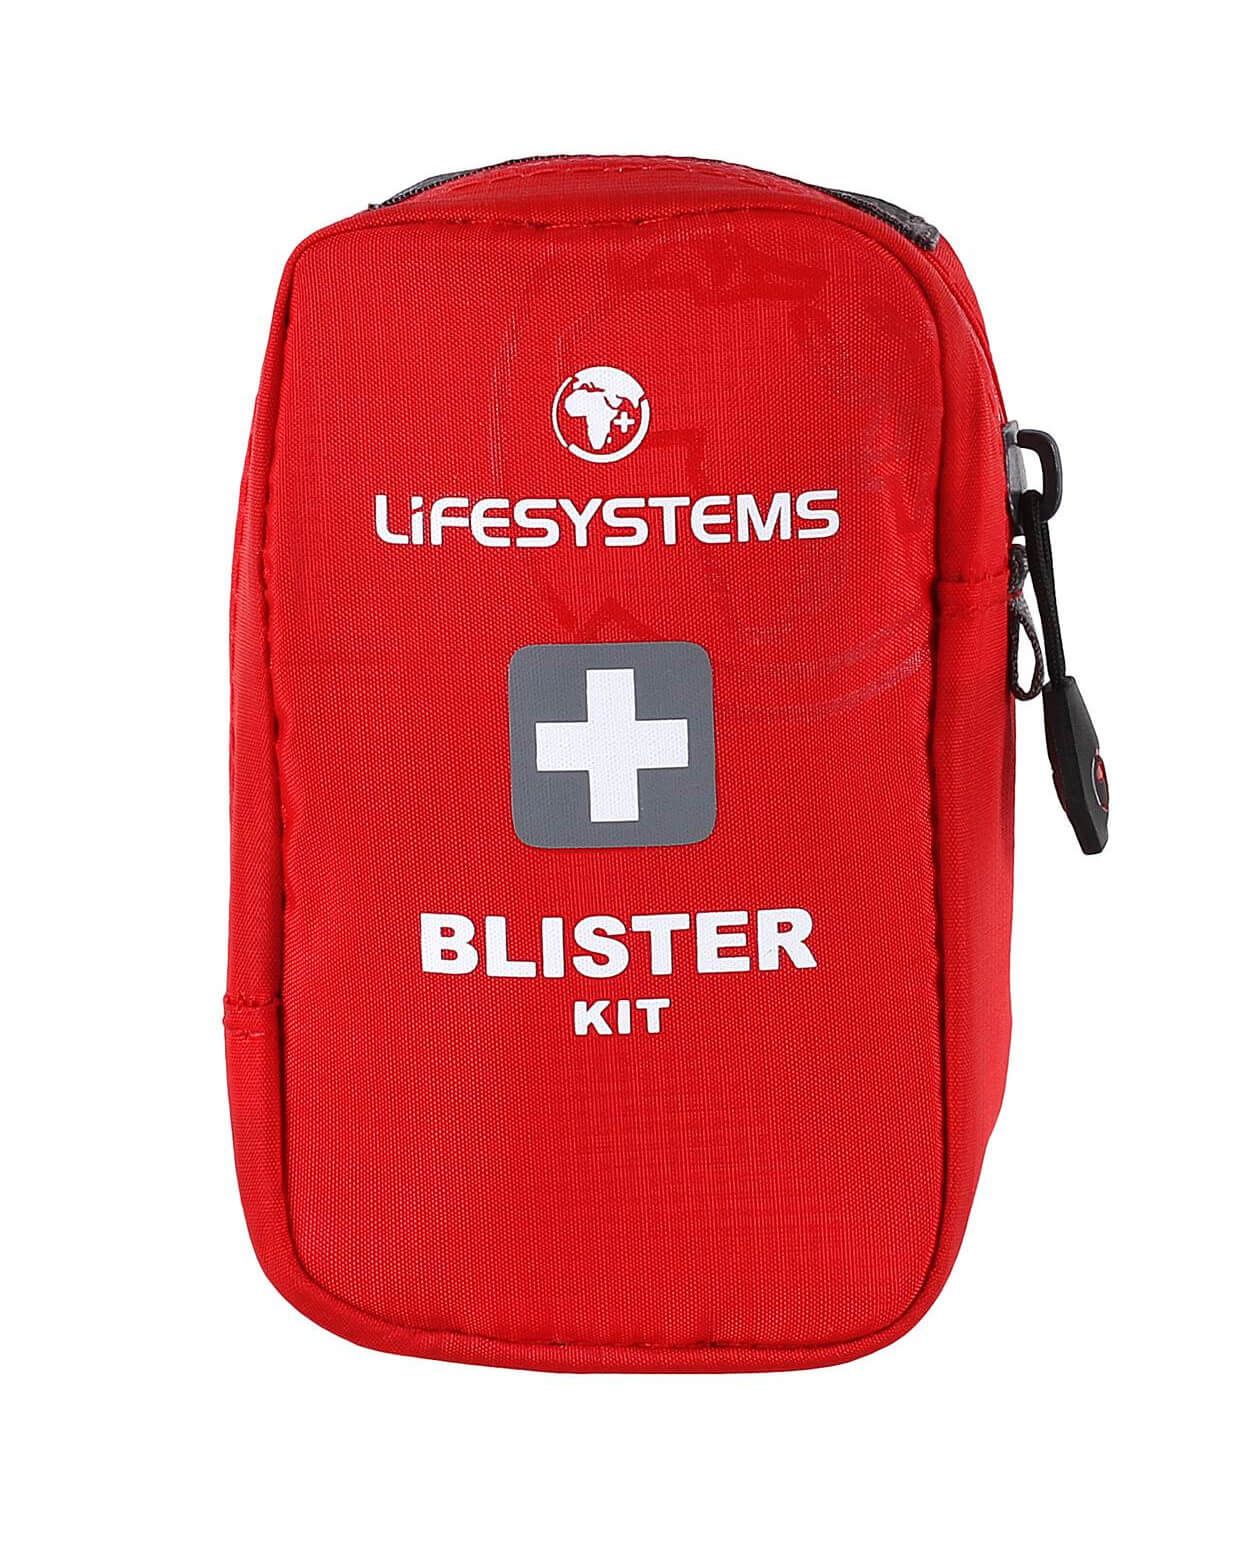 apteczka-turystyczna-blister-kit-lifesystems-1_bigjpg